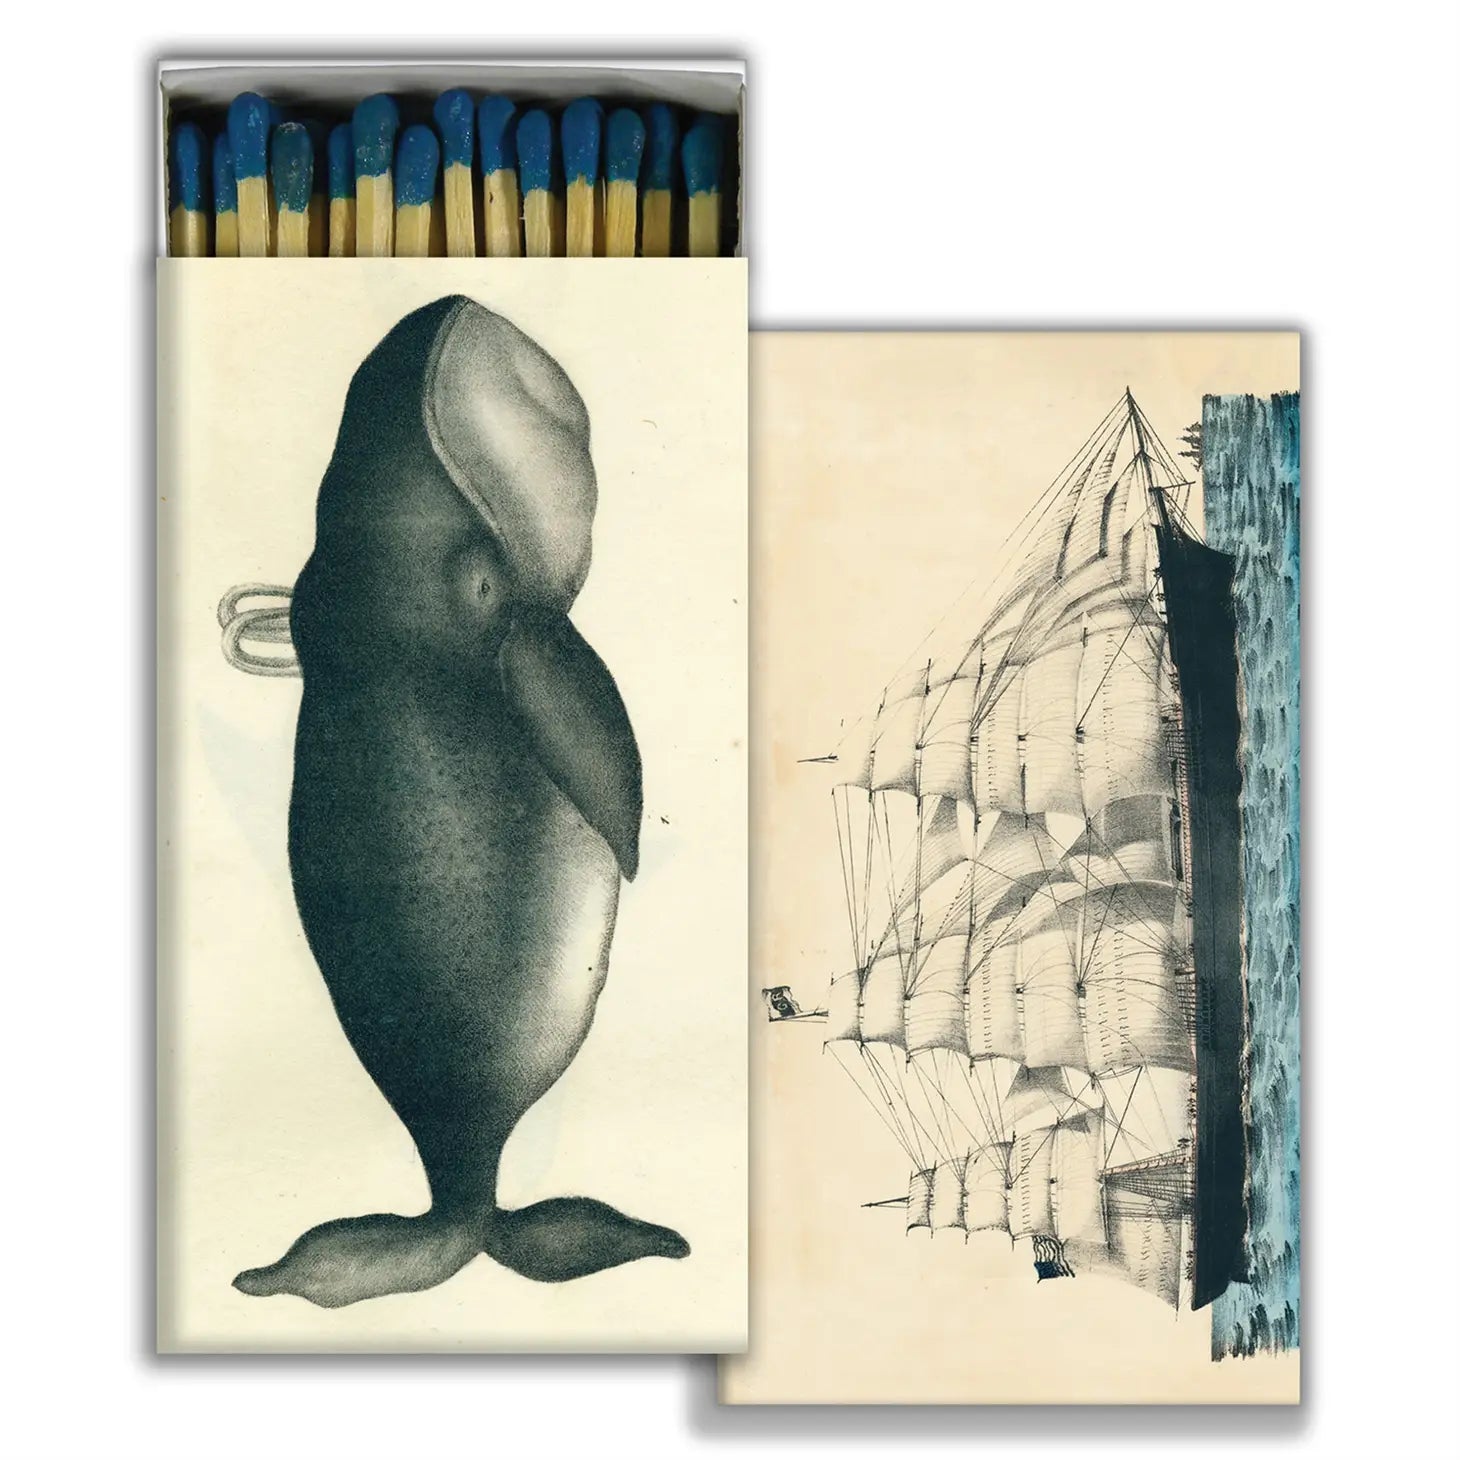 HomArt-Nautical-Whale-Ship-Match-Book